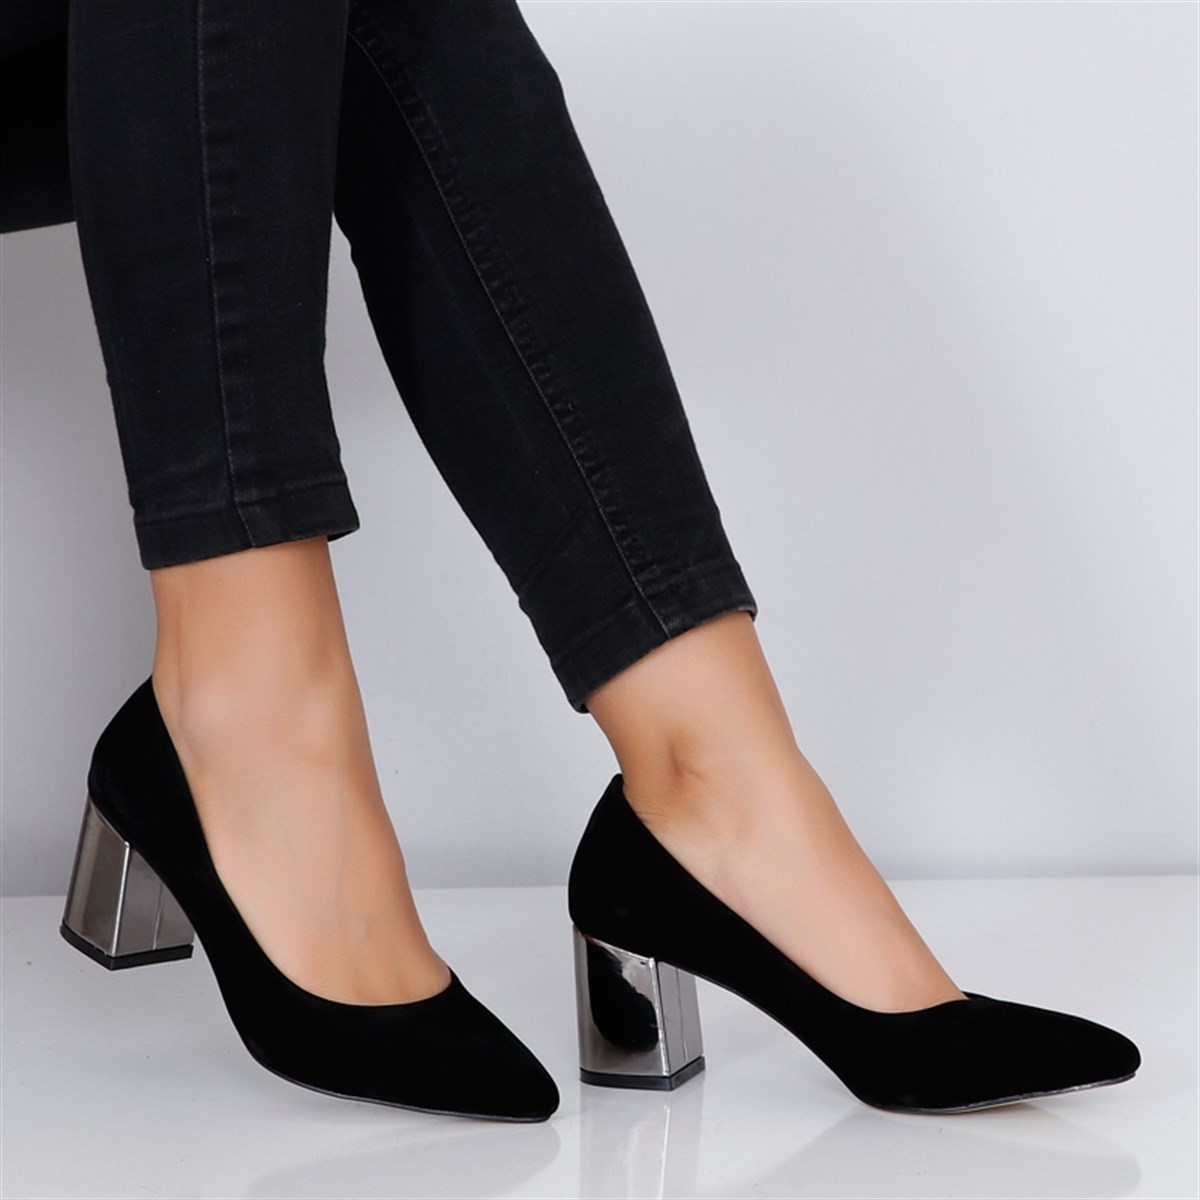 Siyah süet Kalın Topuk Kadın Ayakkabı 173Y Fiyatı ve Modelleri